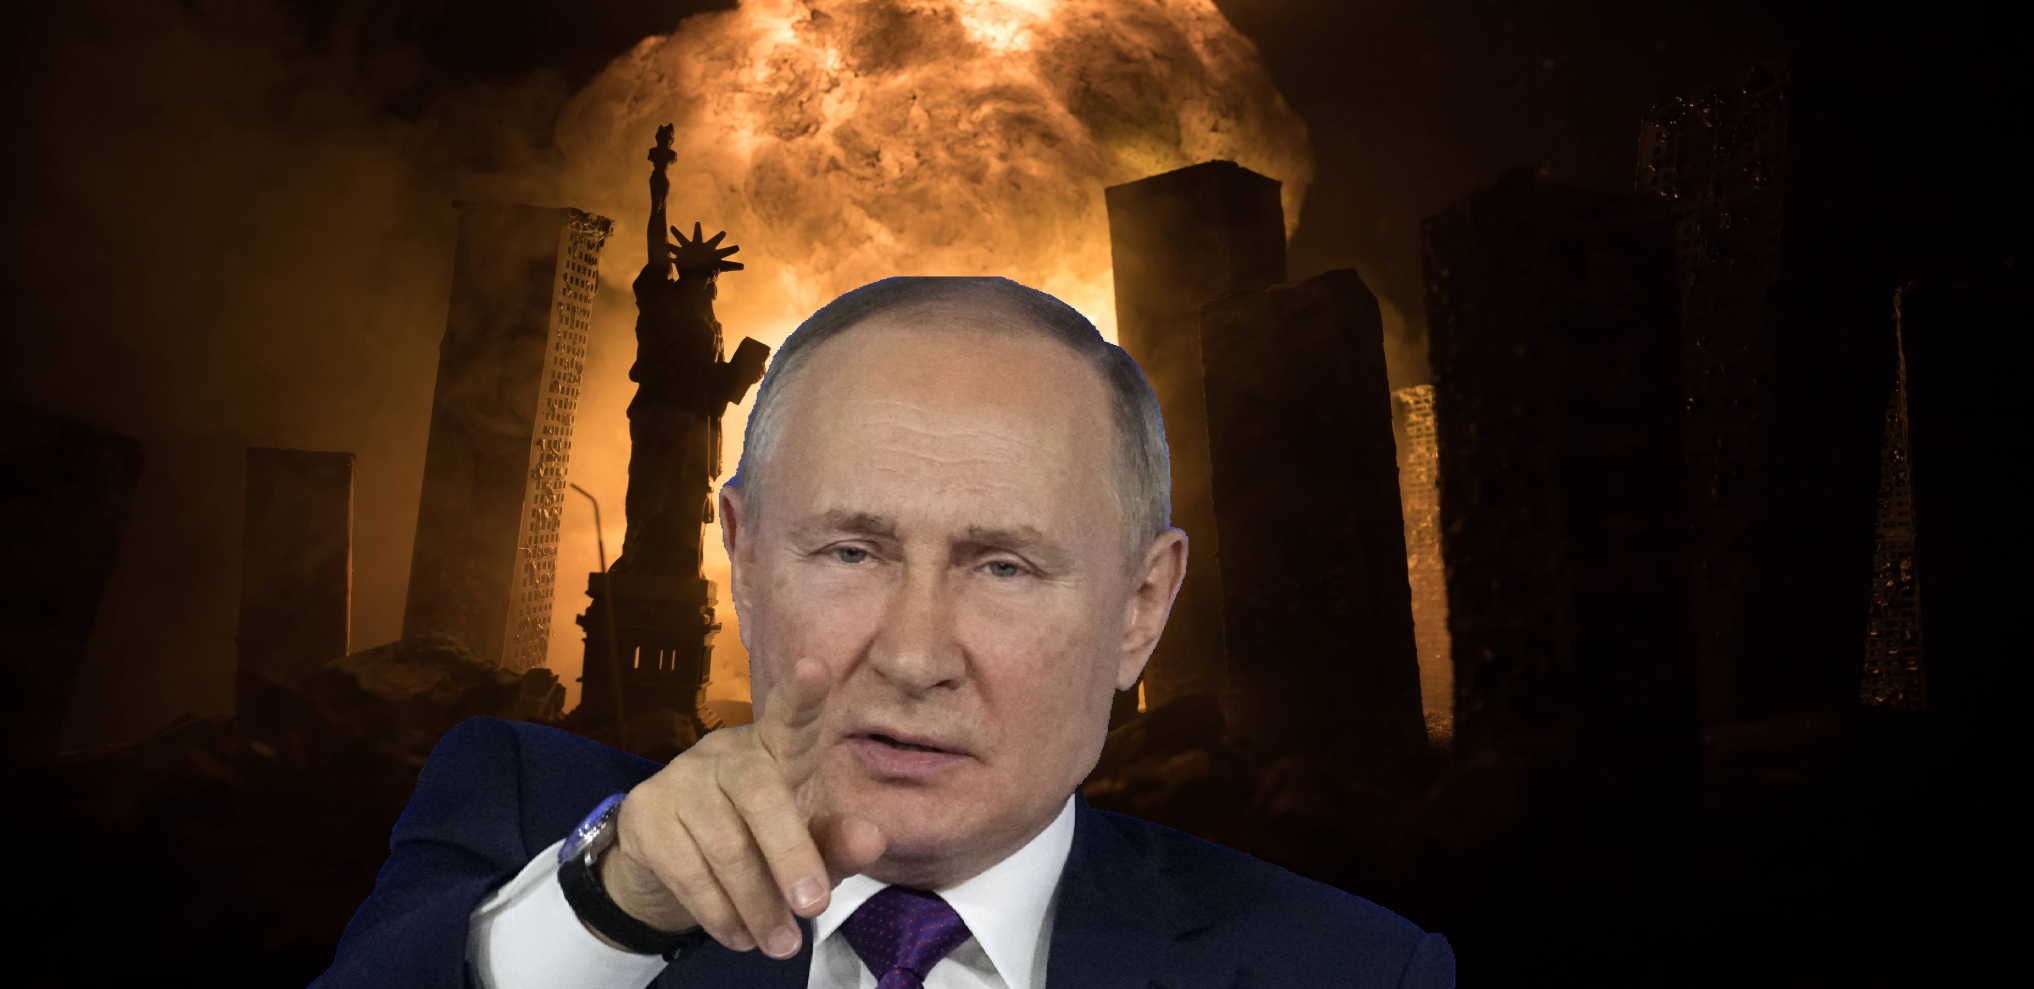 RUSKI ŠAH-MAT Zapad u problemu nakon odluke Kremlja!